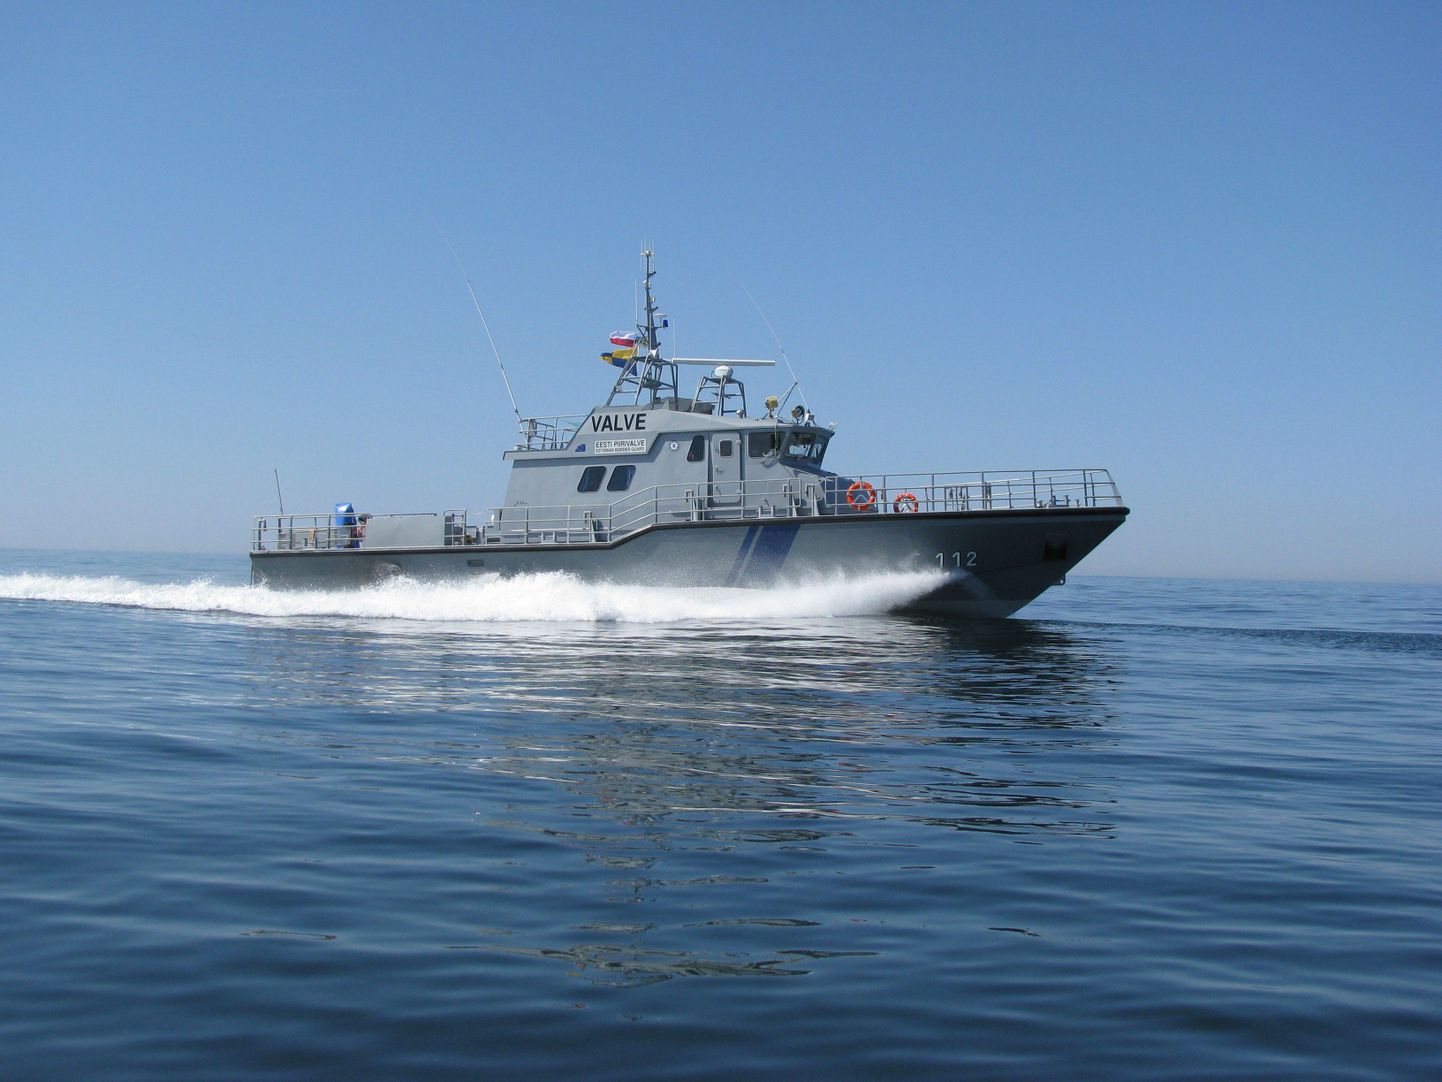 Keskkonnainspektsiooni ja piirivalve ühine patrull-laev Valve.